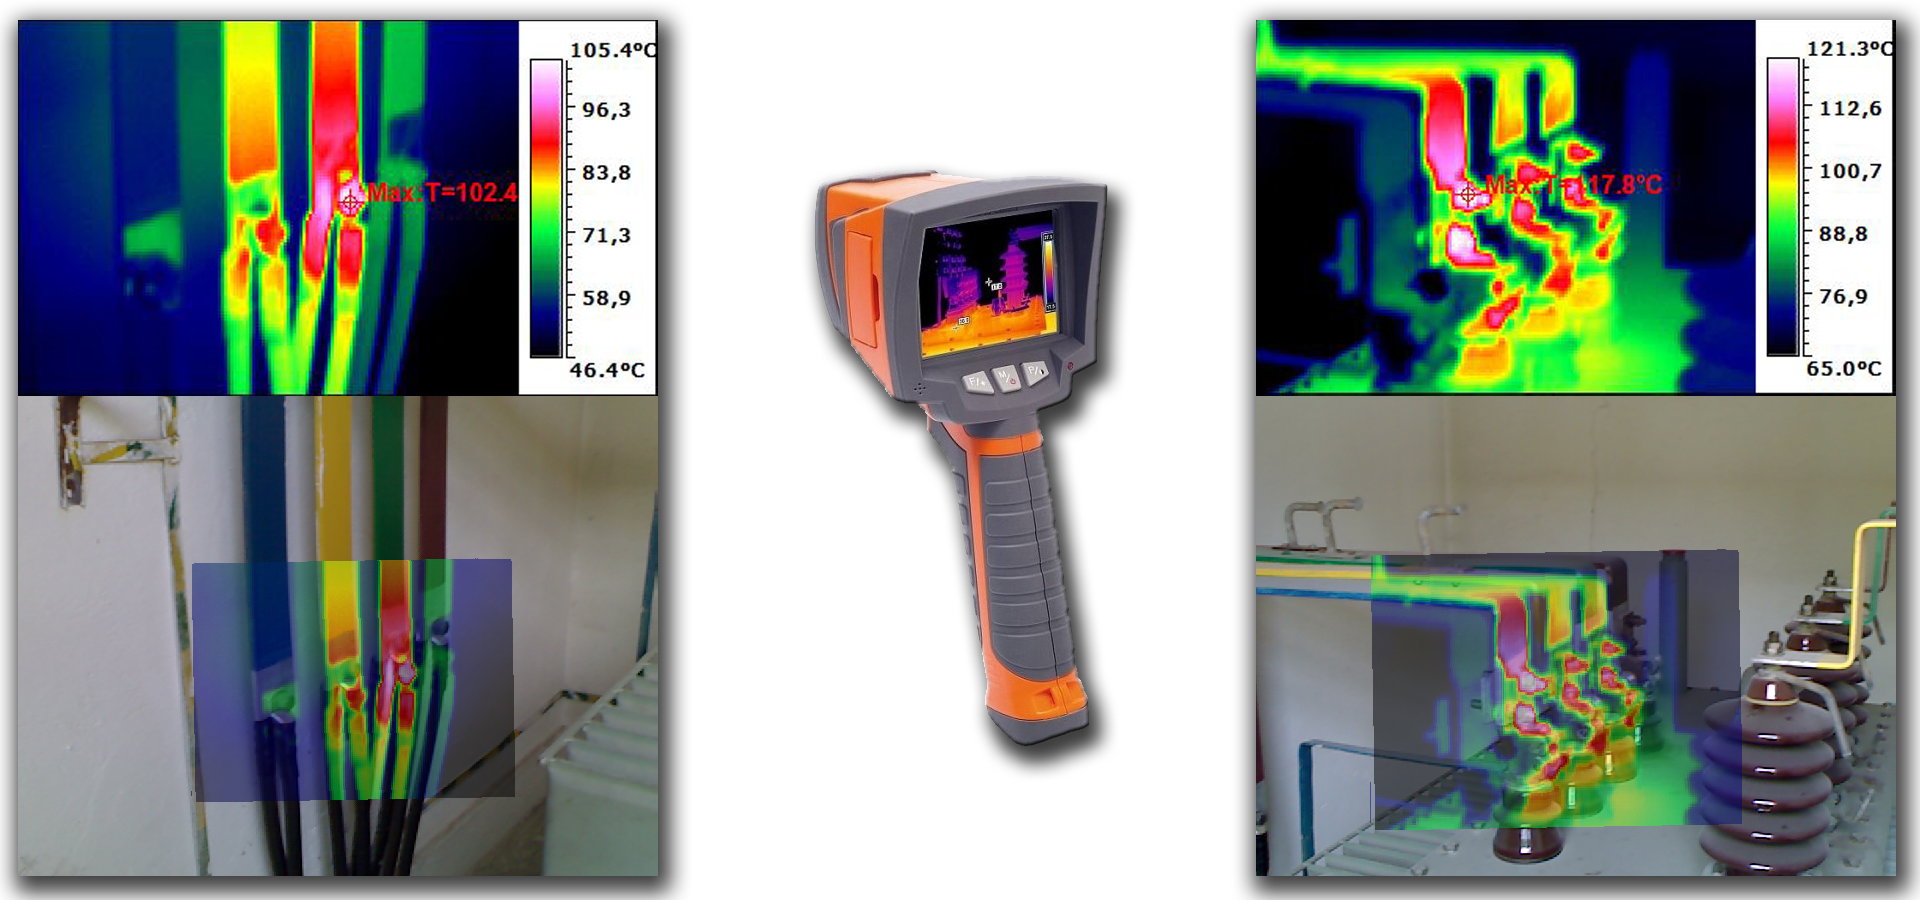 Badania instalacji elektrycznych kamerą termowizyjną